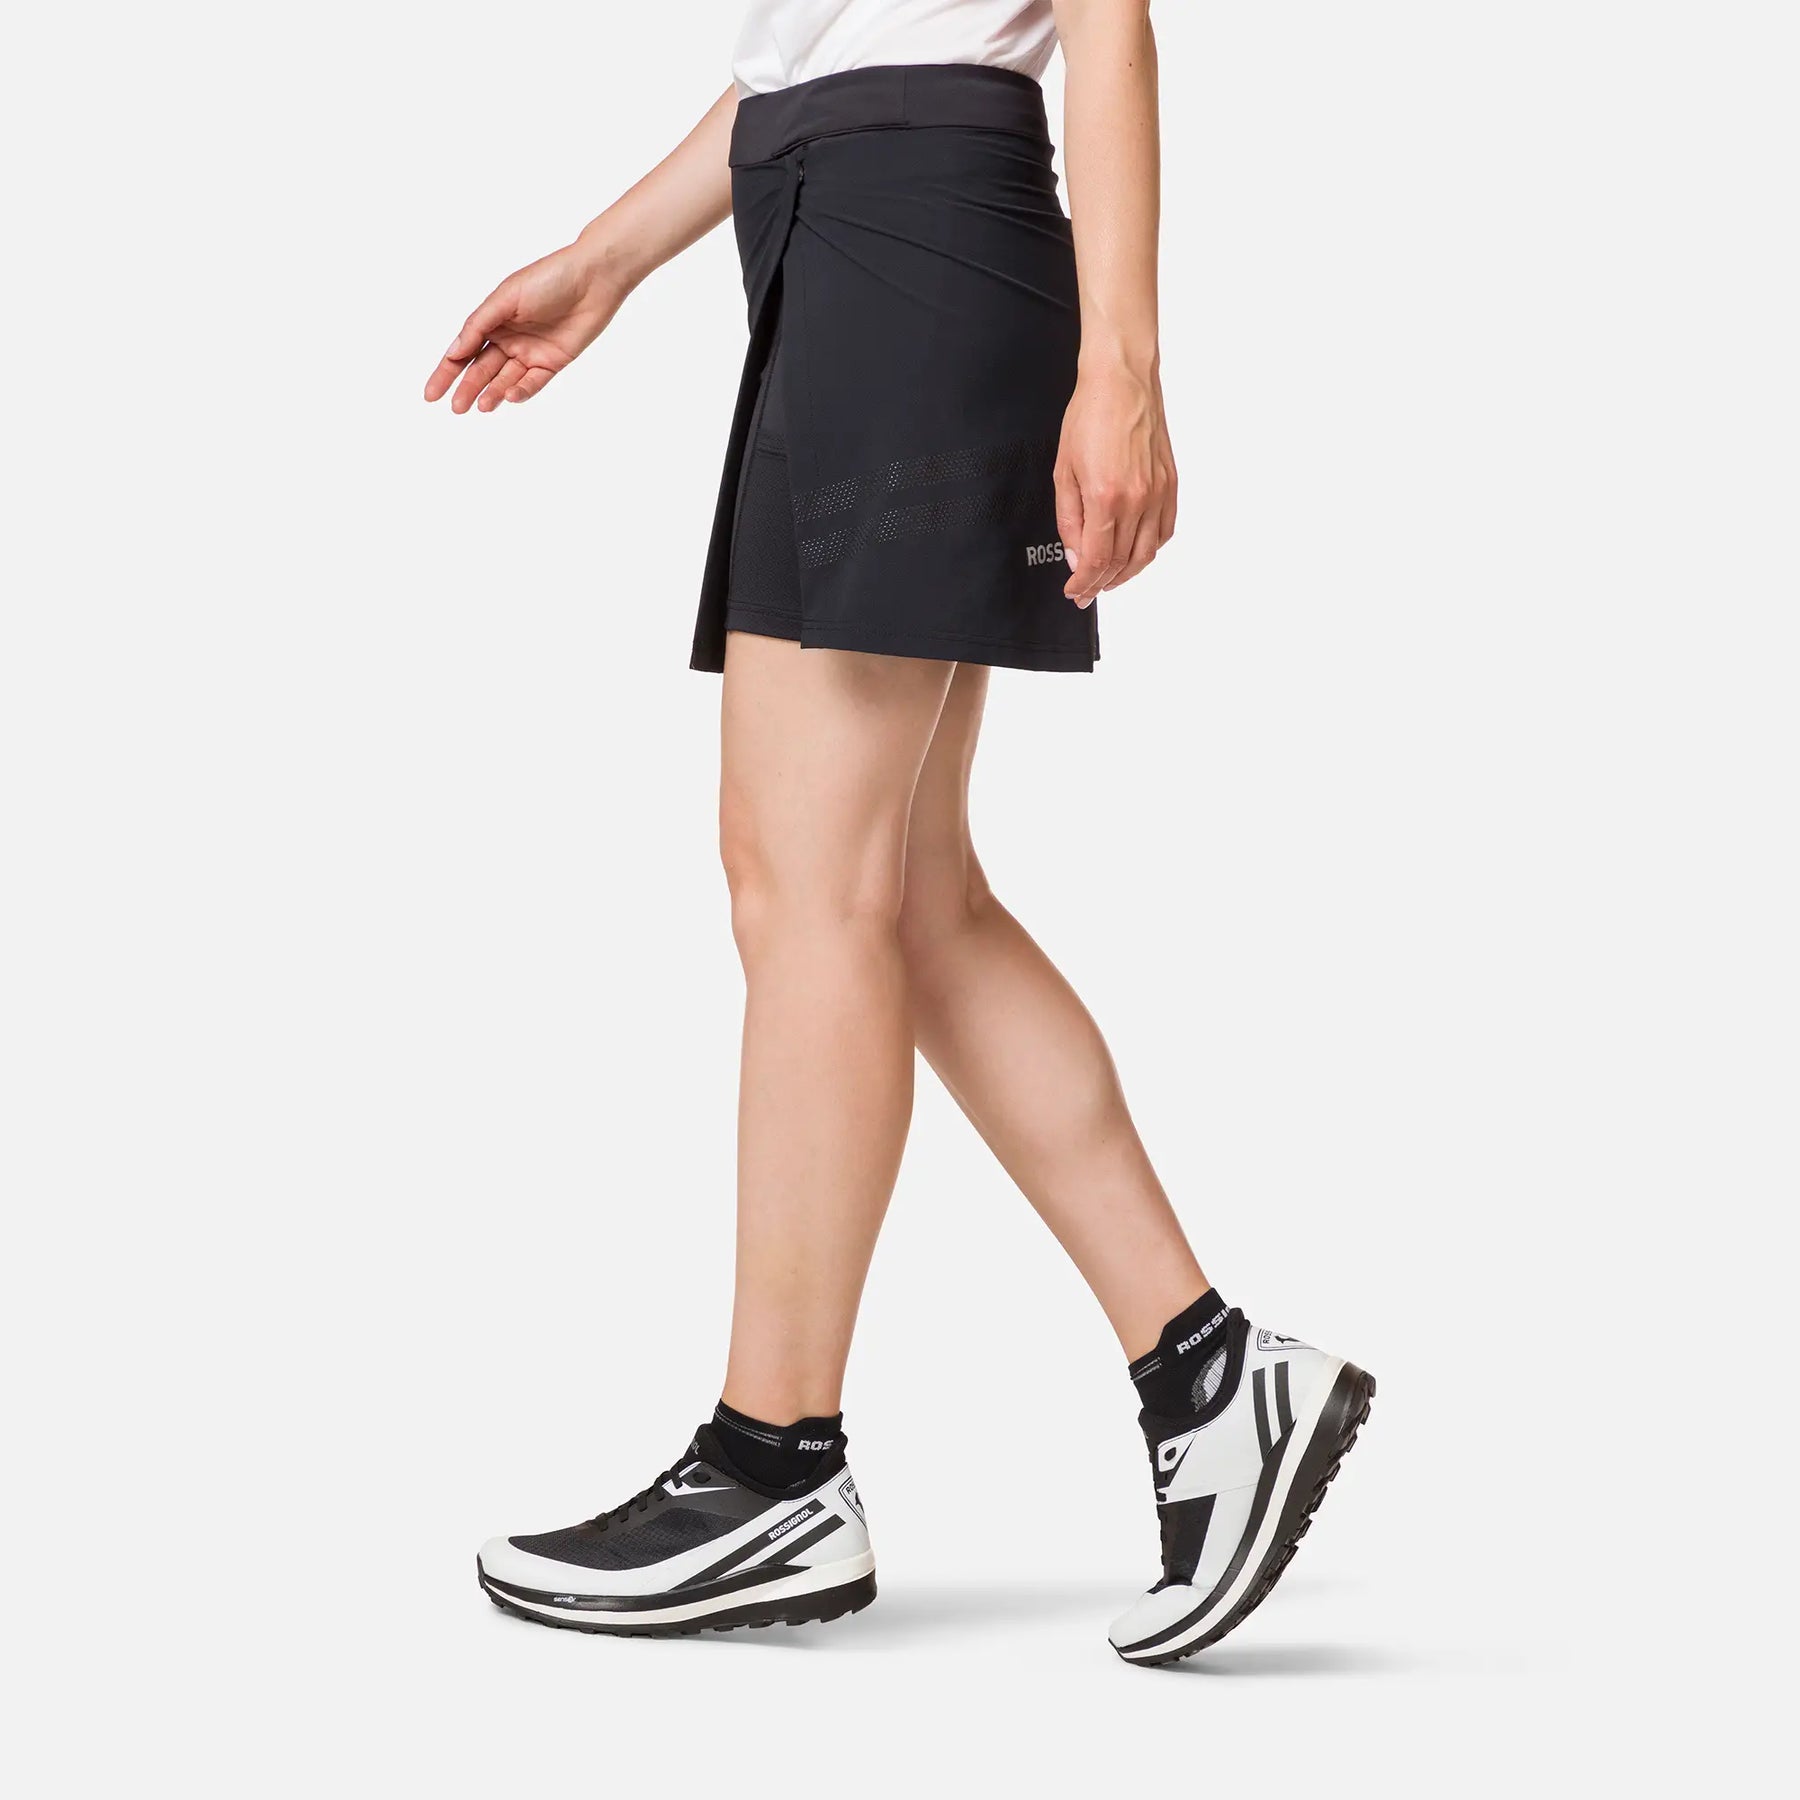 Womens Lightweight Breathable Skirt - Black